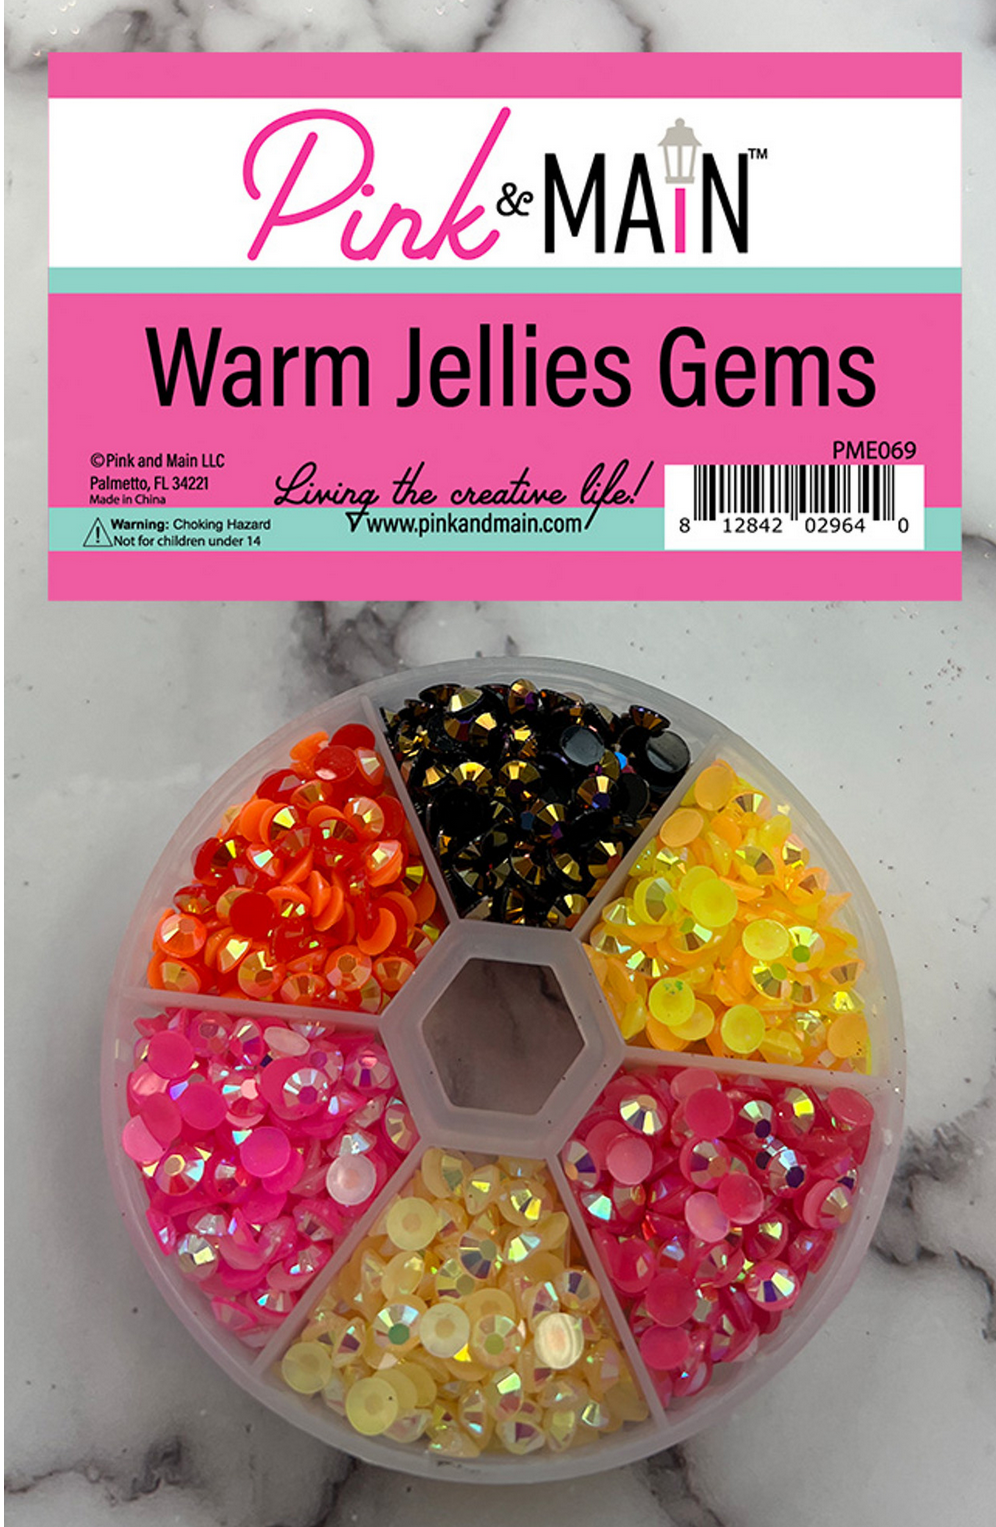 Warm Jellies Gems